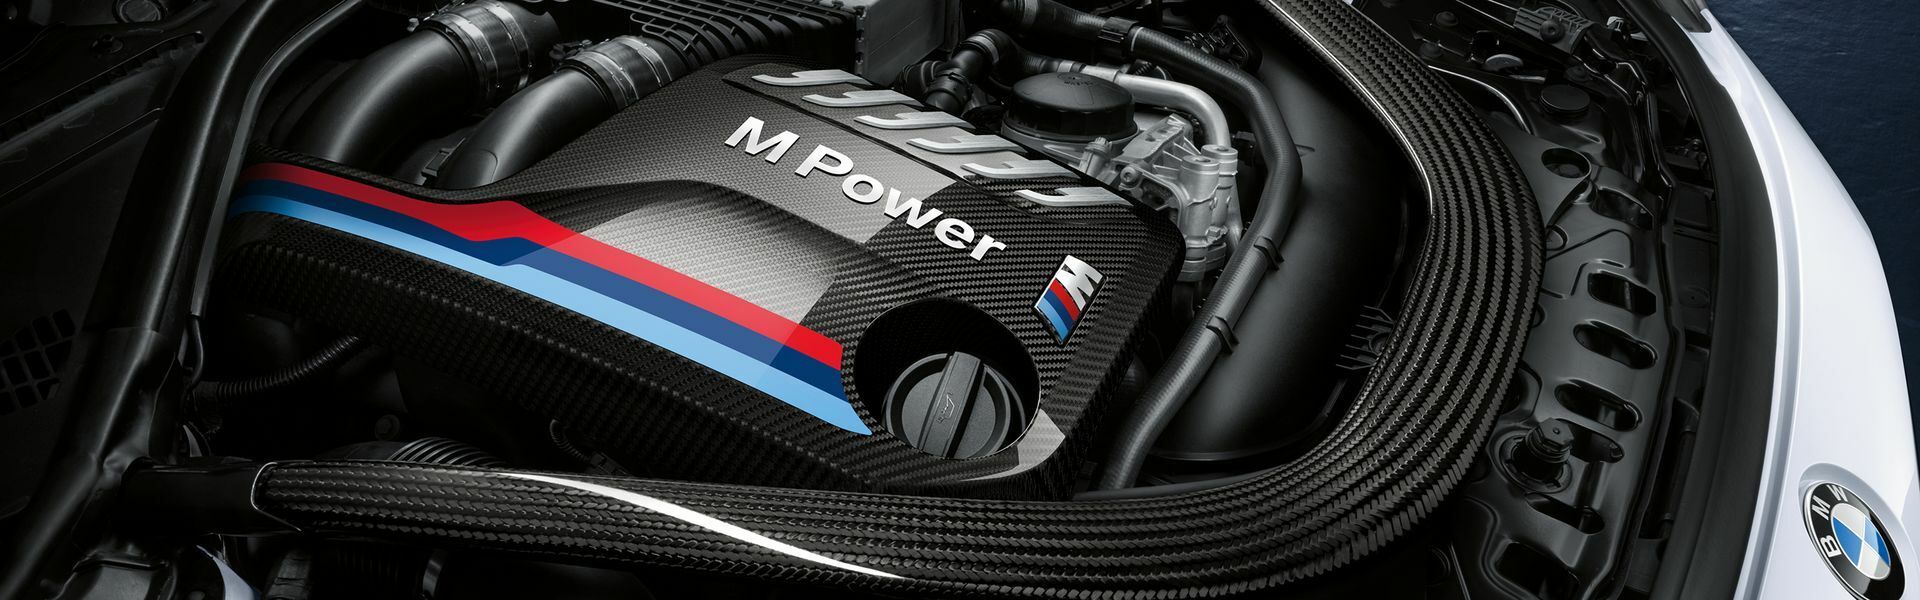 Zvýšení výkonu/ Softwarové úpravy/ Drobné performance díly pro automobil BMW M8 F93